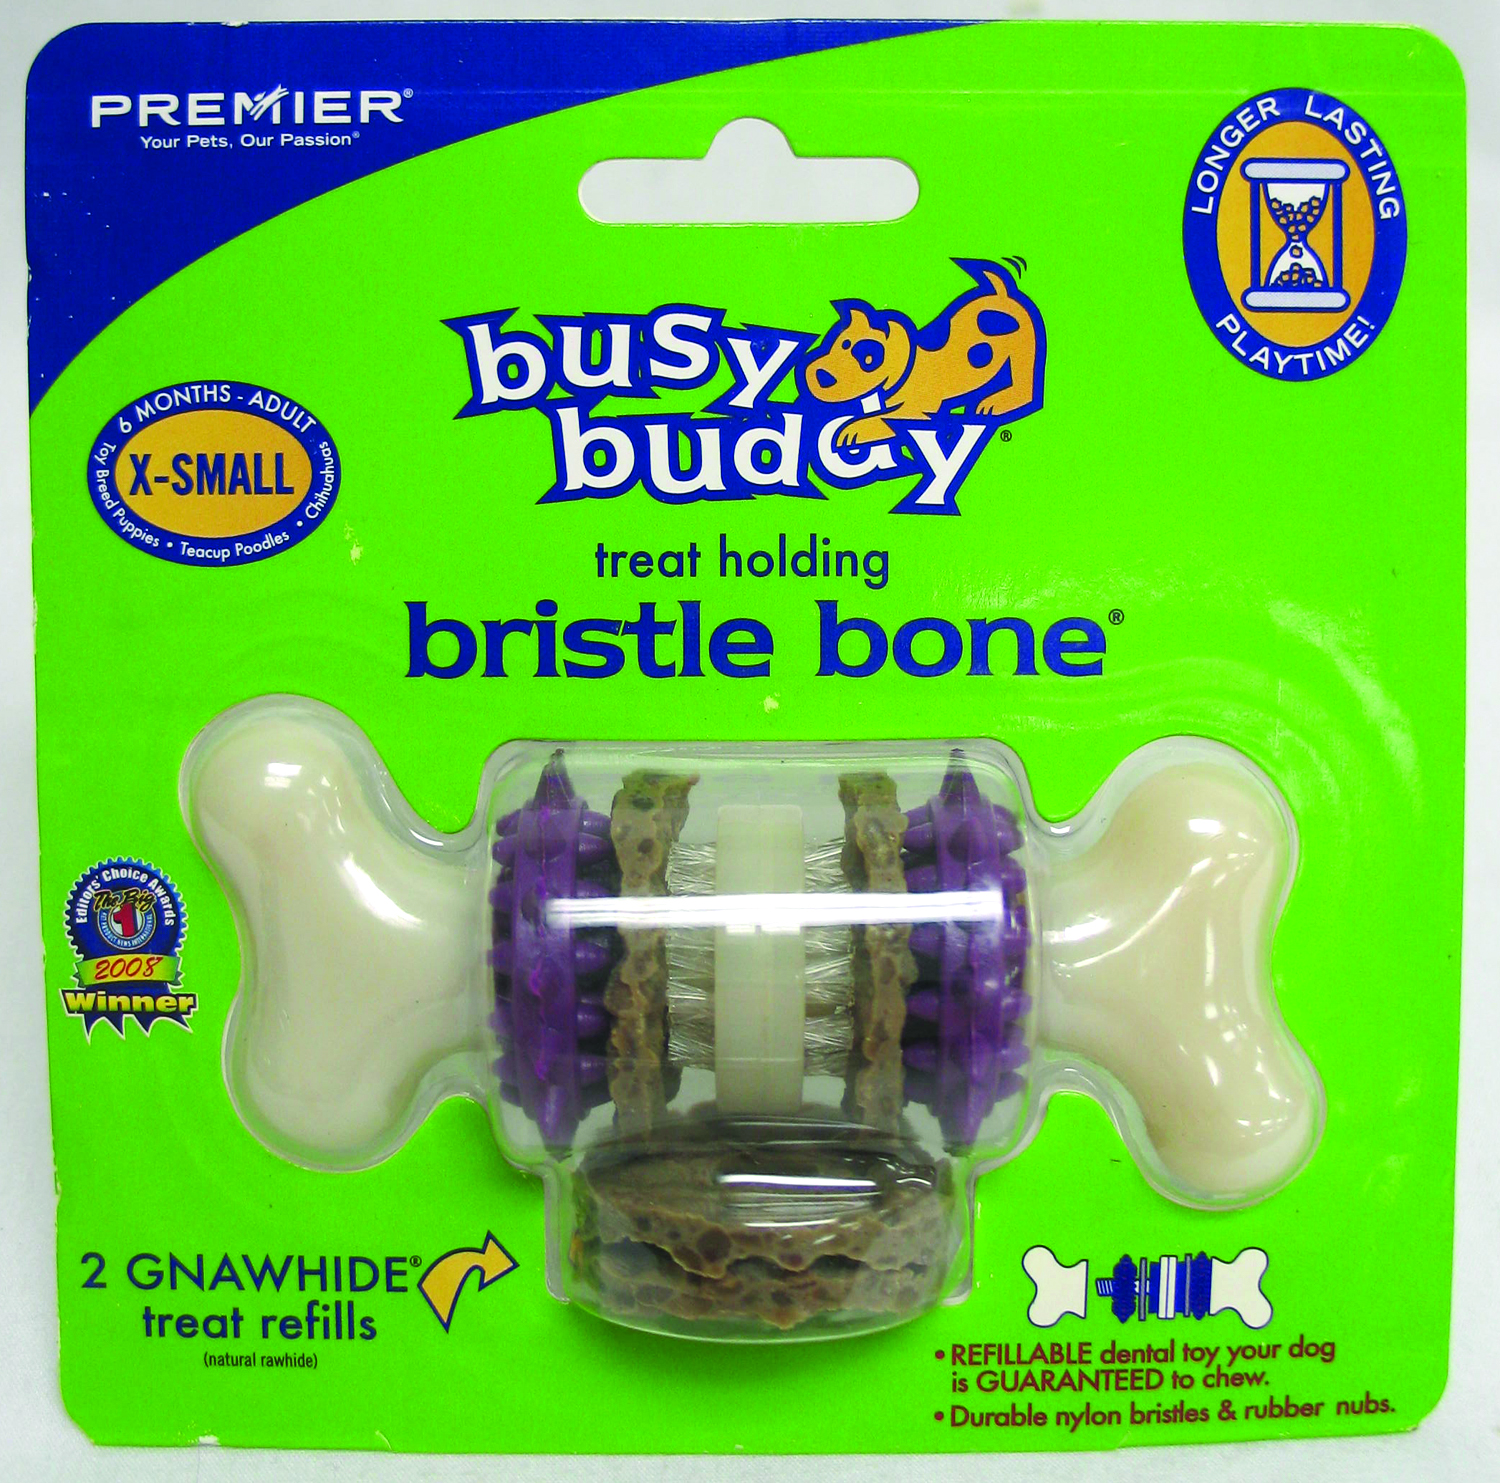 BUSY BUDDY BRISTLE BONE